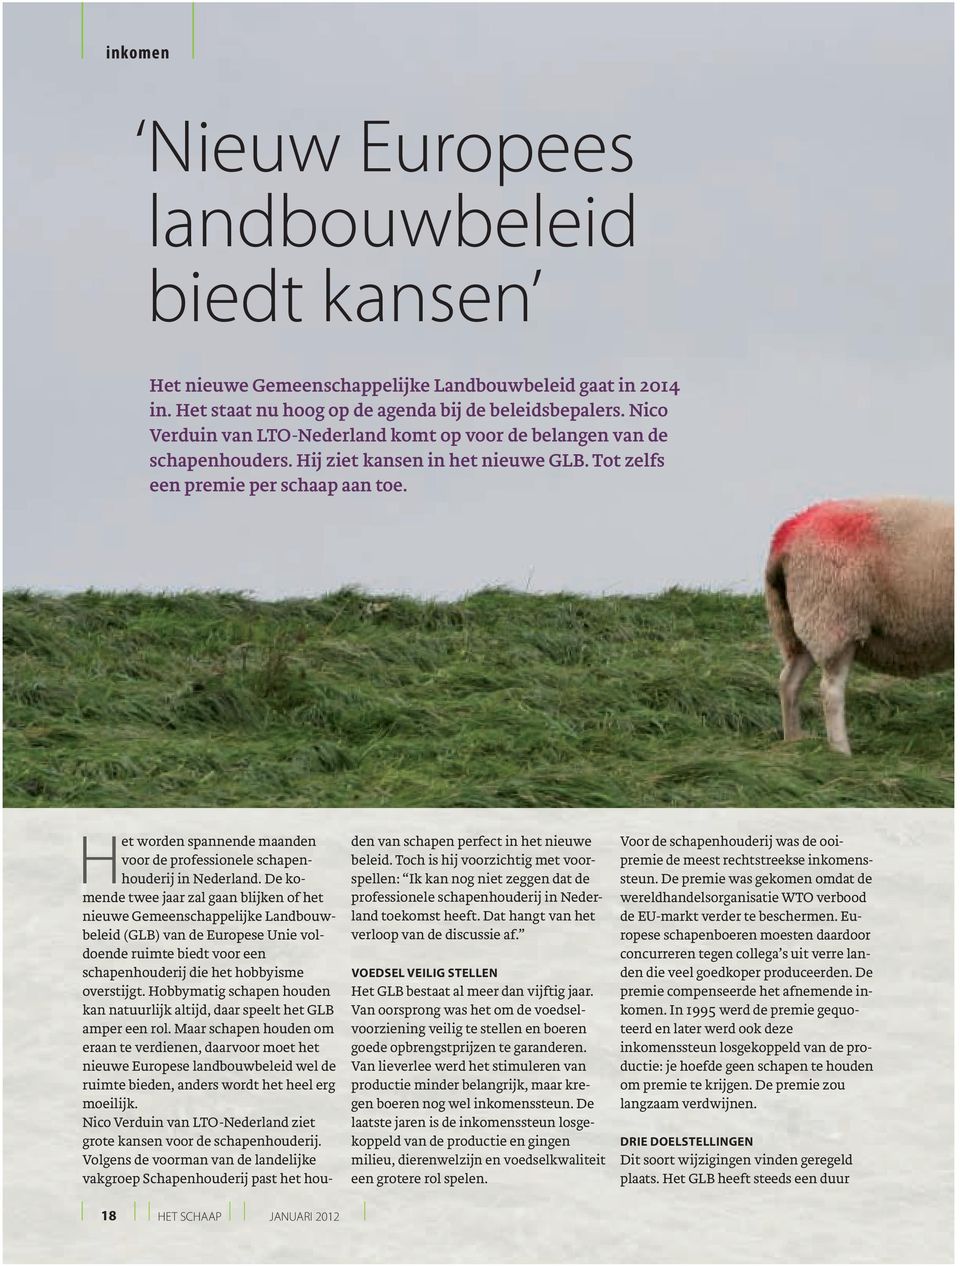 Het worden spannende maanden voor de professionele schapenhouderij in Nederland.